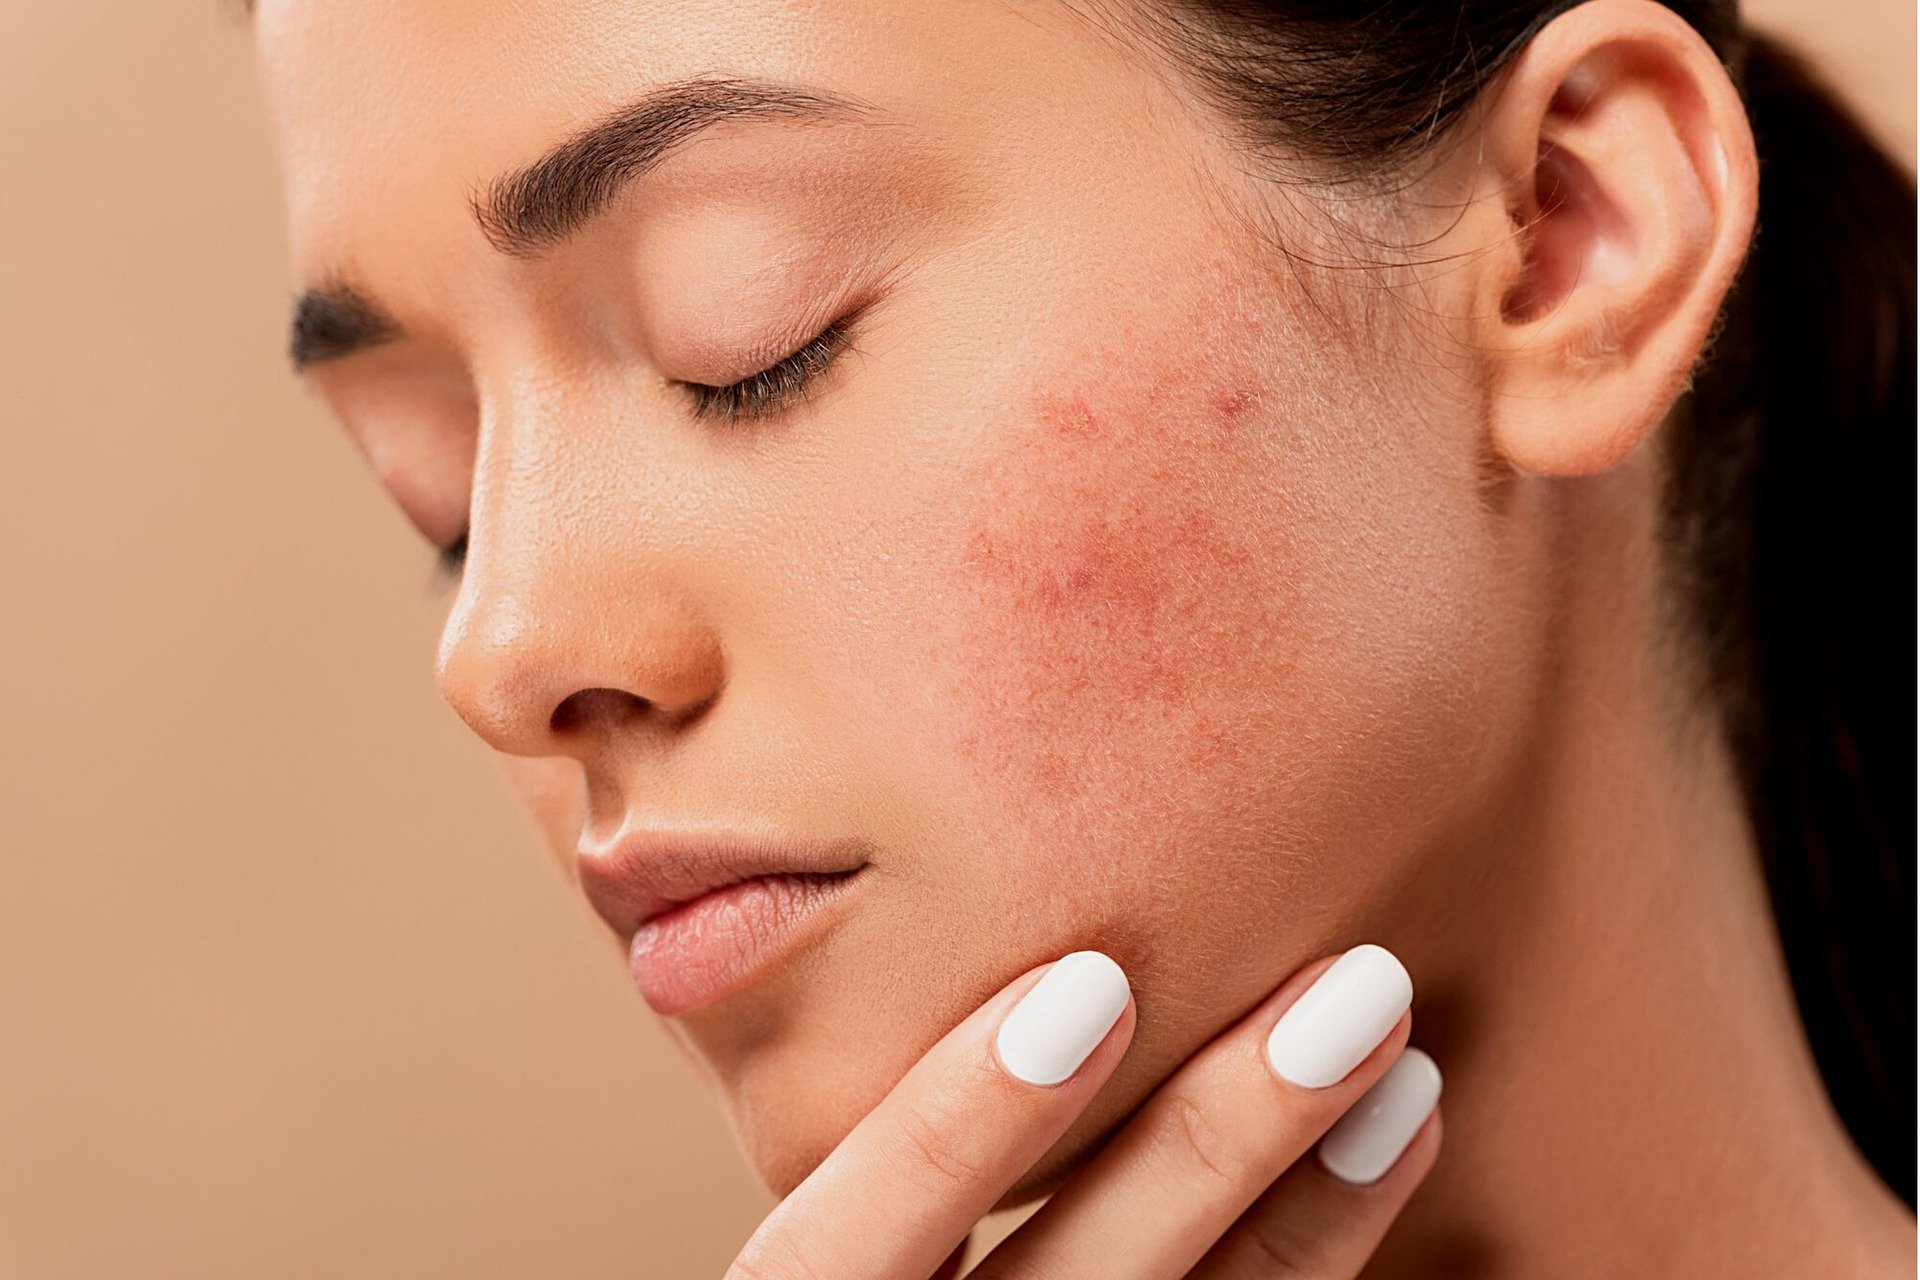 Ακμή: 5 κοινές συνήθειες στη φροντίδα του δέρματος που επιδεινώνουν την ακμή [vid]